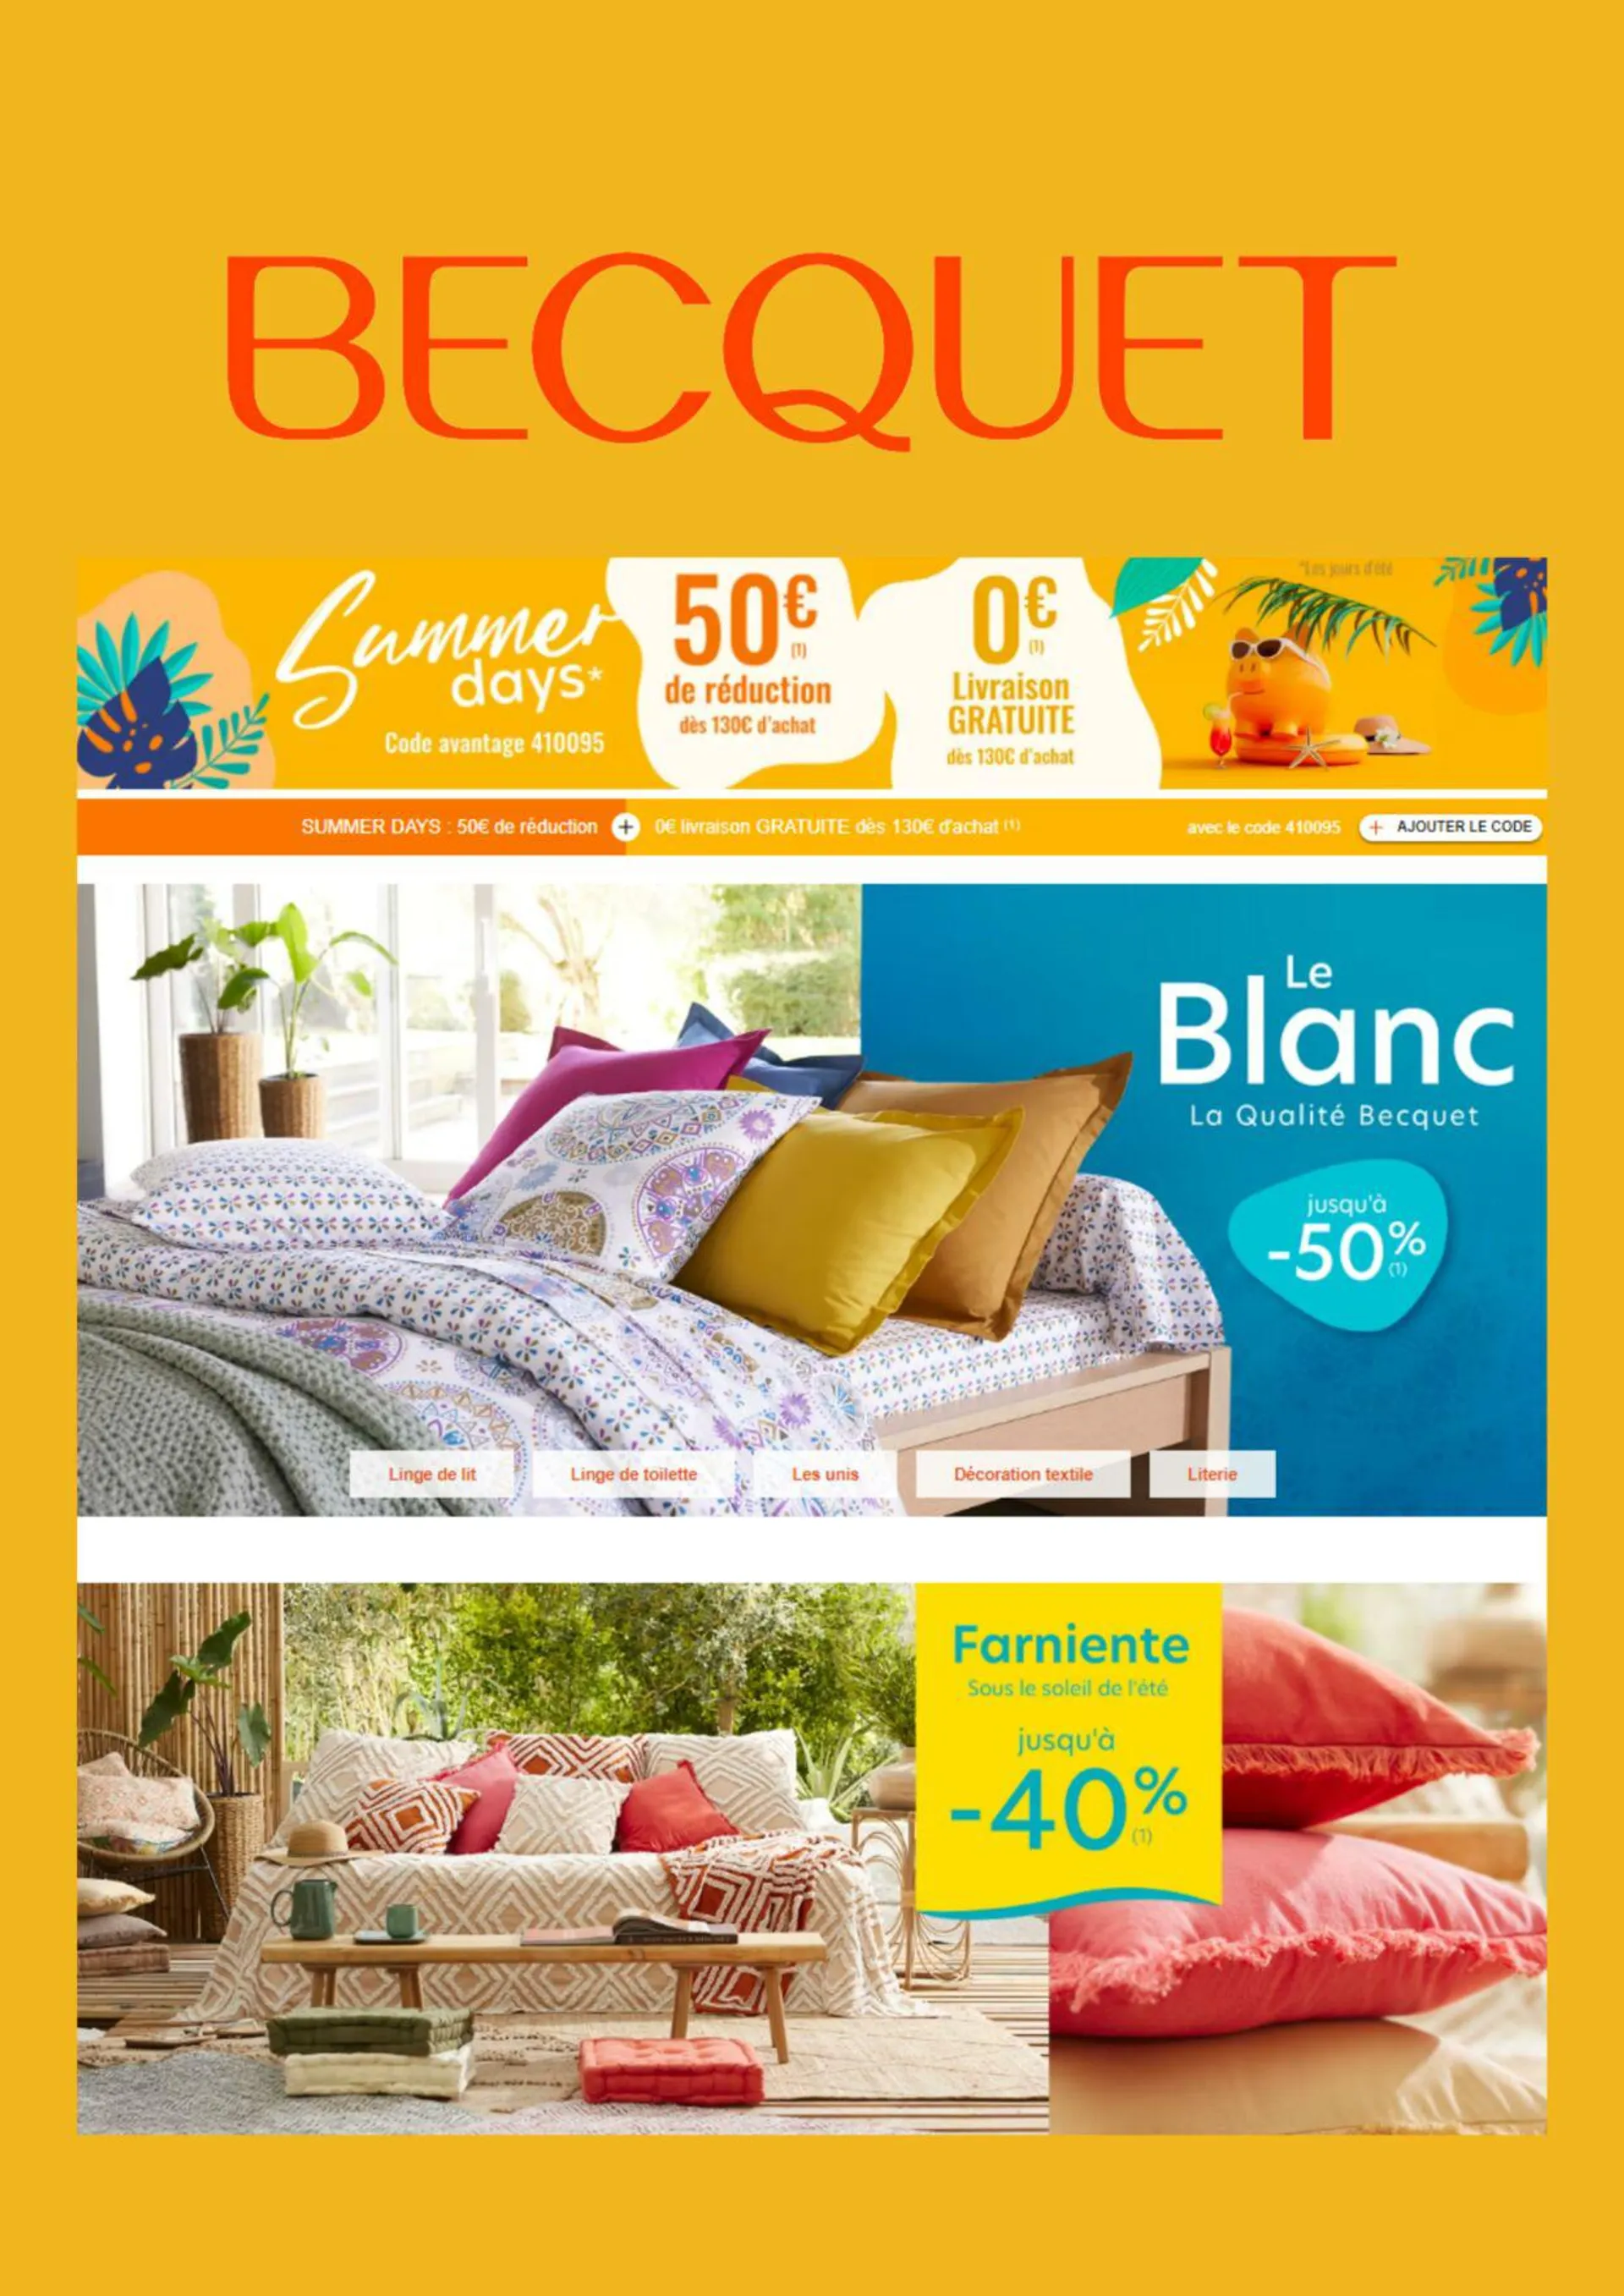 Becquet - 1